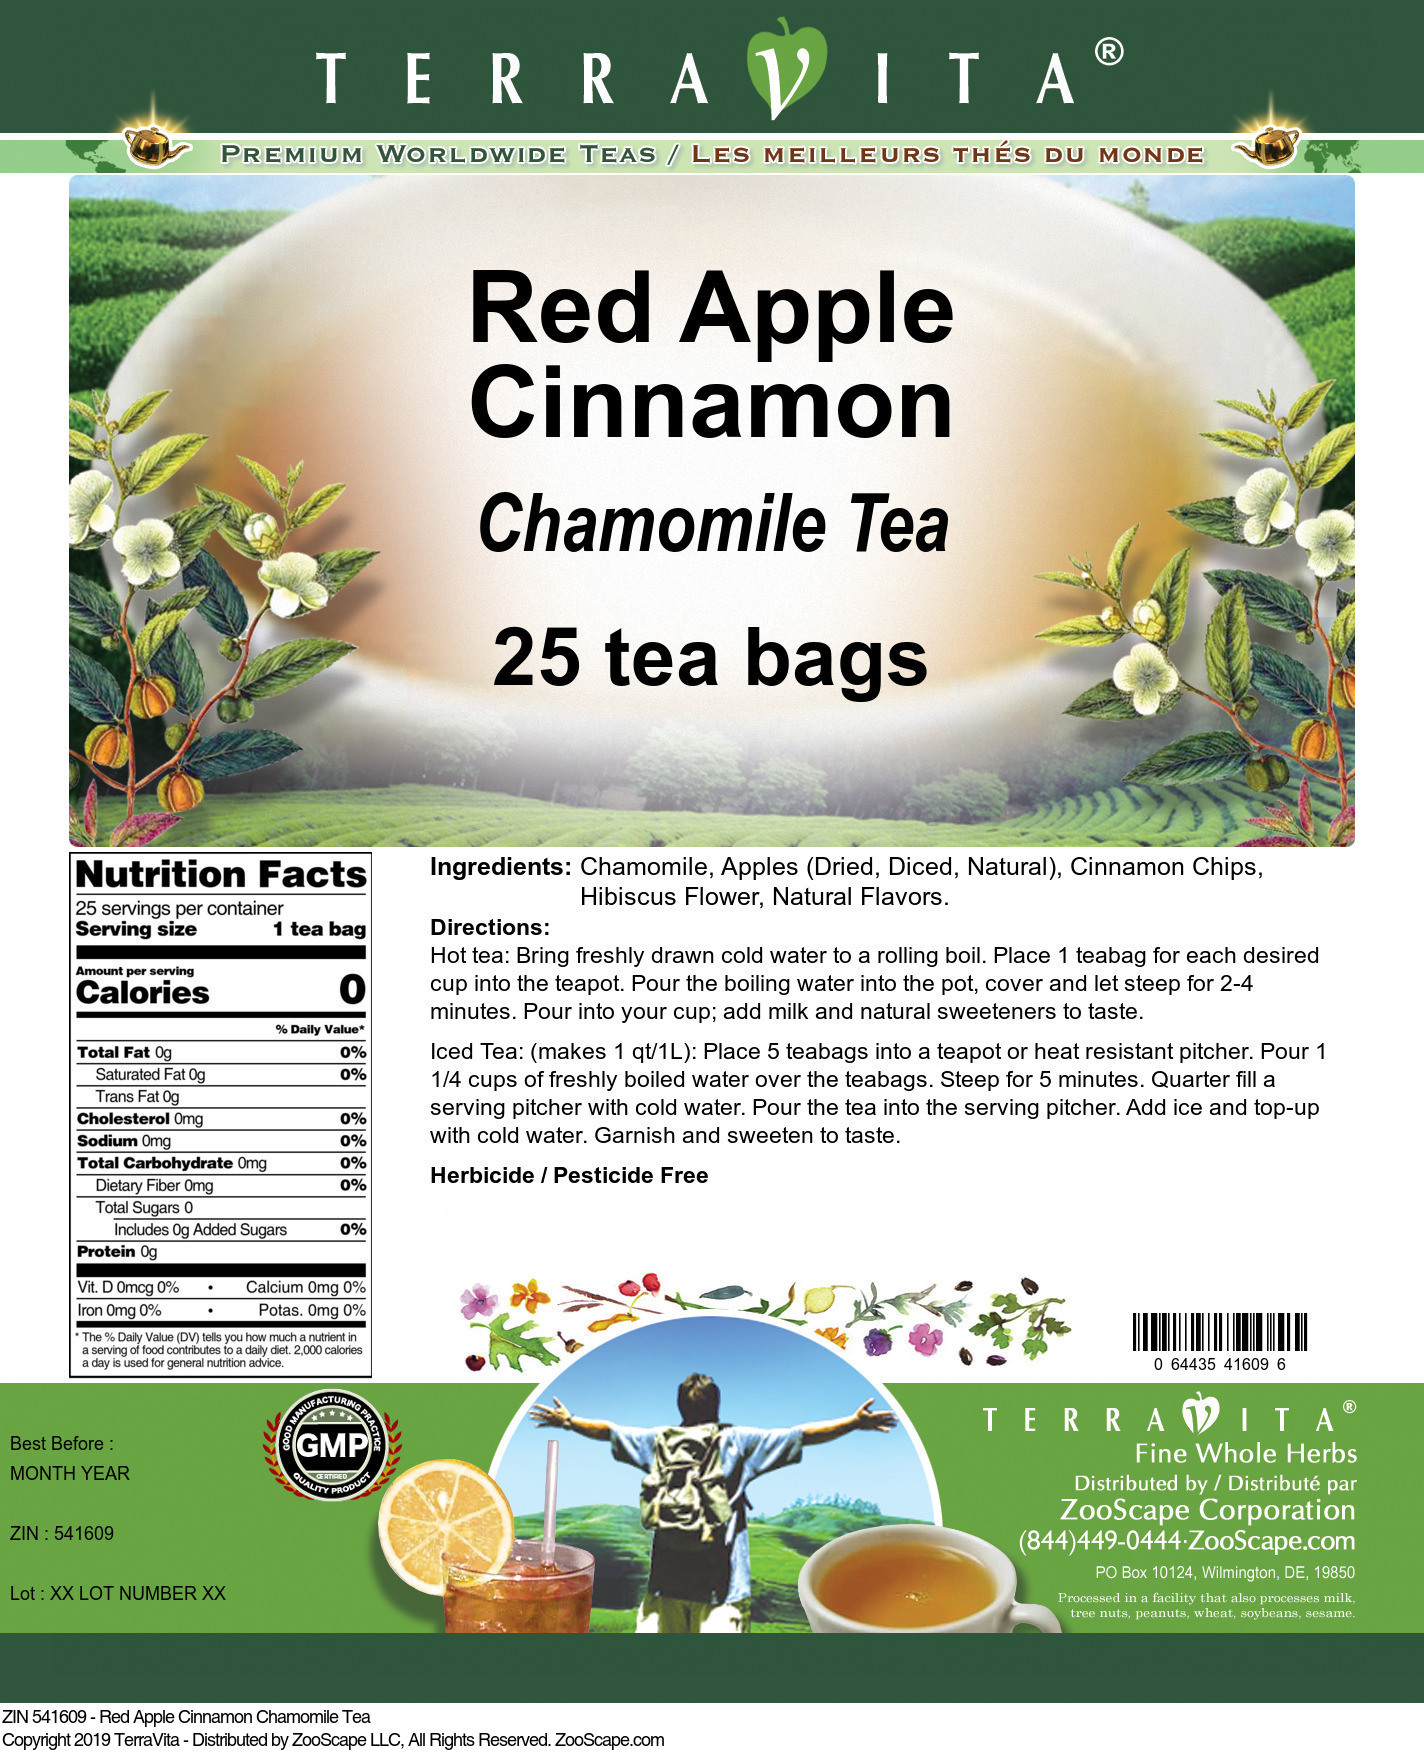 Red Apple Cinnamon Chamomile Tea - Label